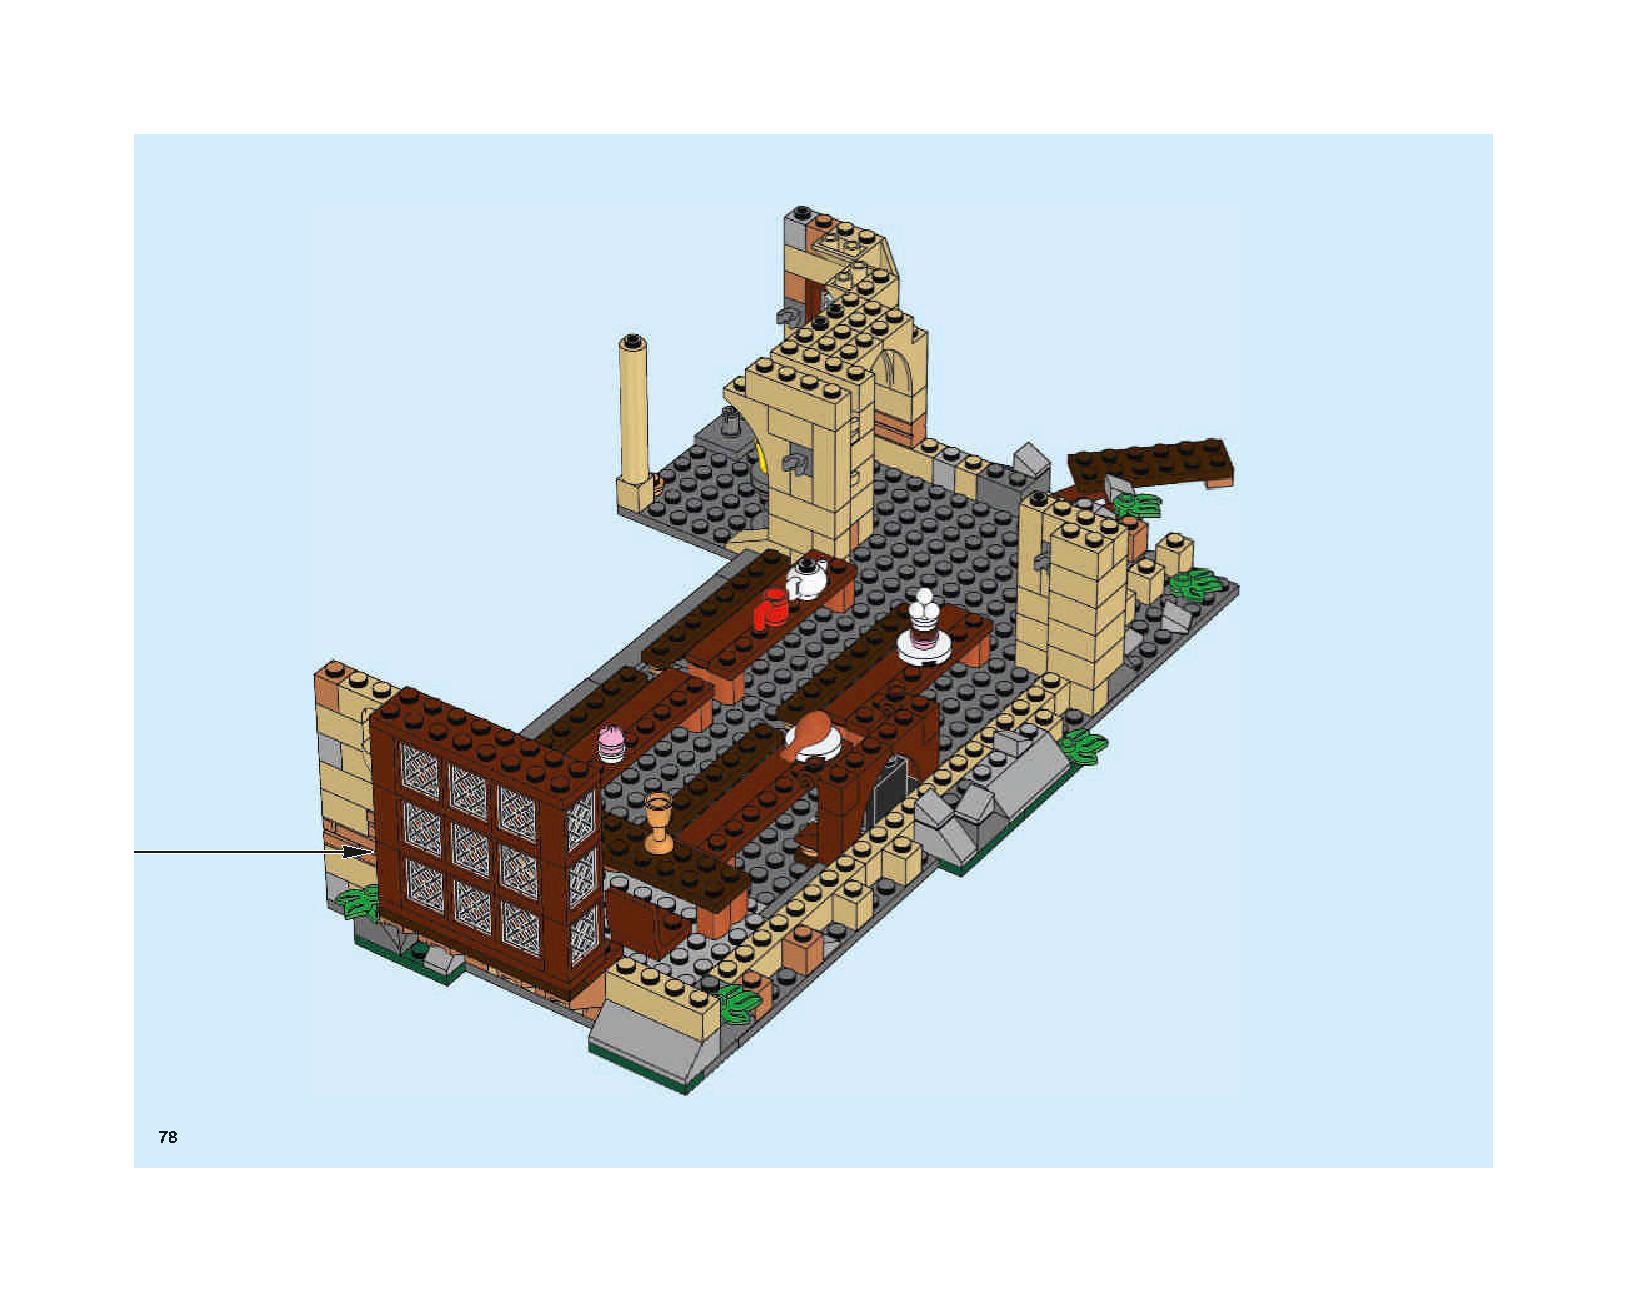 ホグワーツの大広間 75954 レゴの商品情報 レゴの説明書・組立方法 78 page